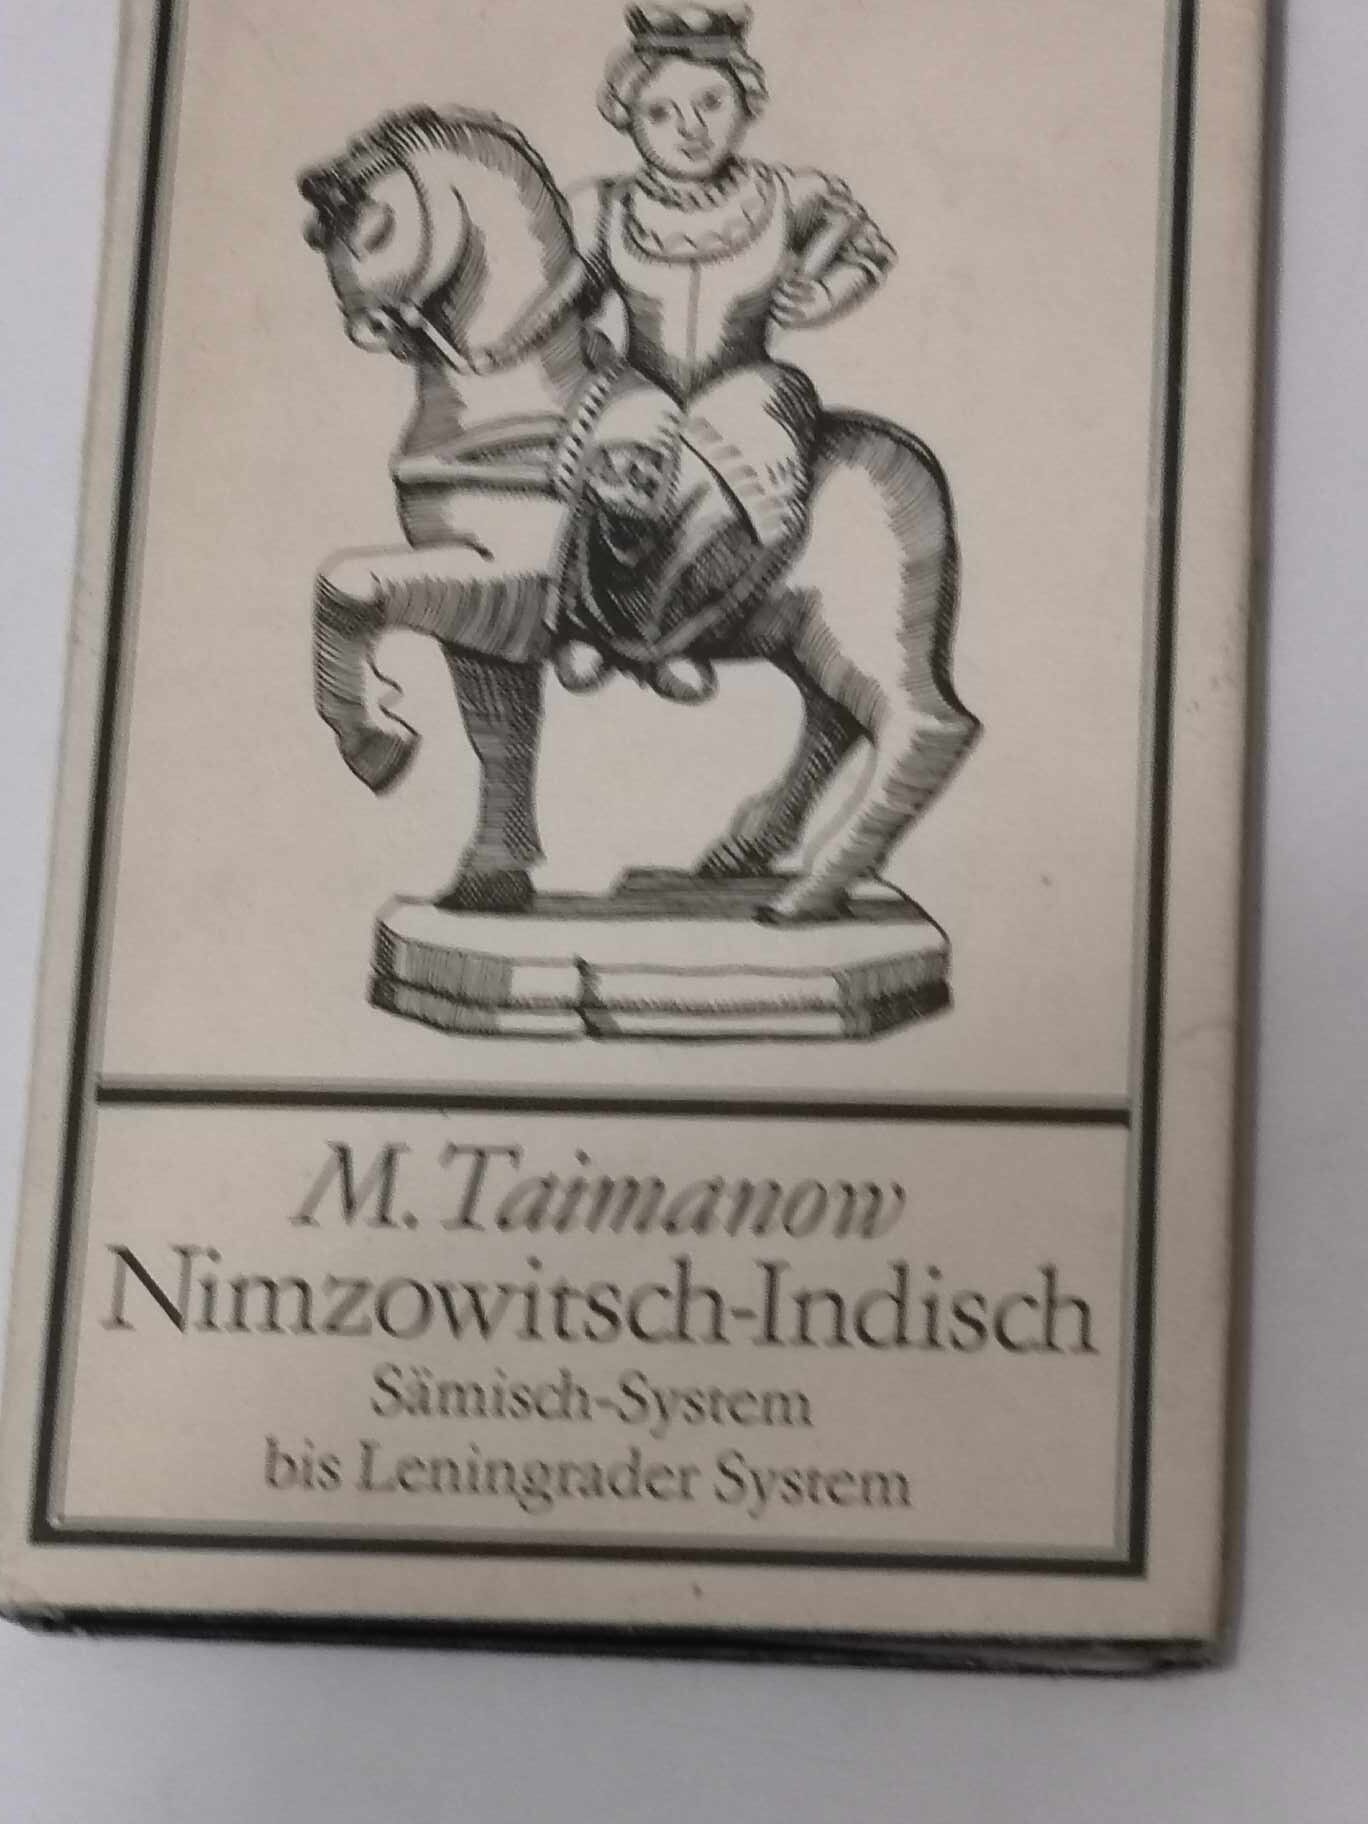 318# Nimzowitsch-Indisch Samisch-System bis Leningrader System (M.Tajmanow) OBRONA NIMZOWITSCHA